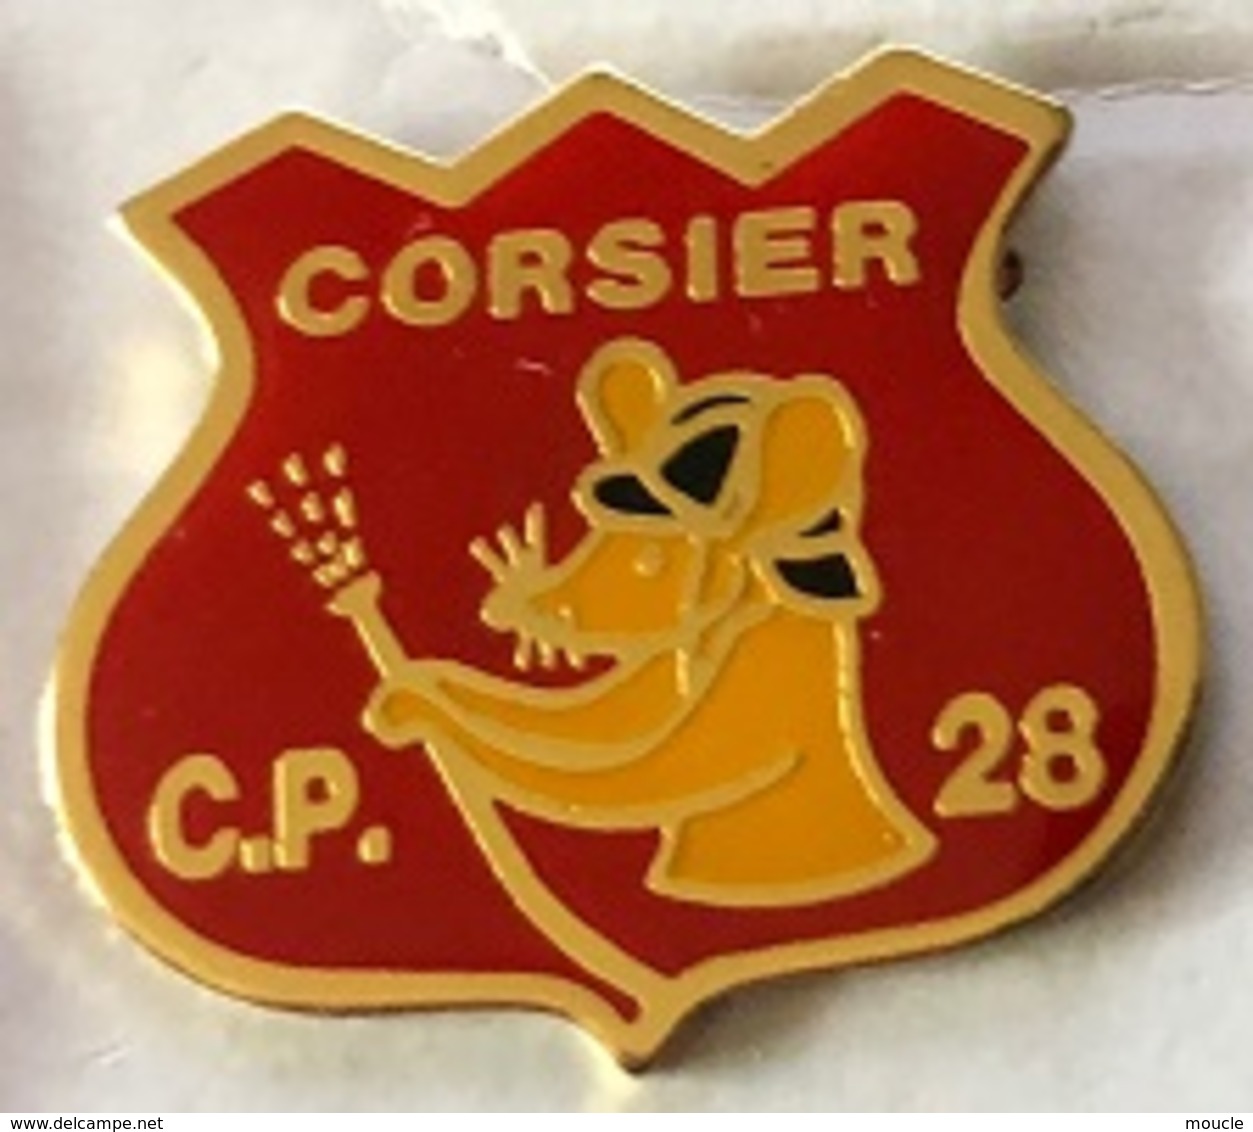 SAPEURS POMPIERS - CORSIER - GENEVE - C.P. 28 - SOURIS - RAT - GENEVA - GENF - GINERVA - SUISSE - SCHWEIZ-   (25) - Pompiers